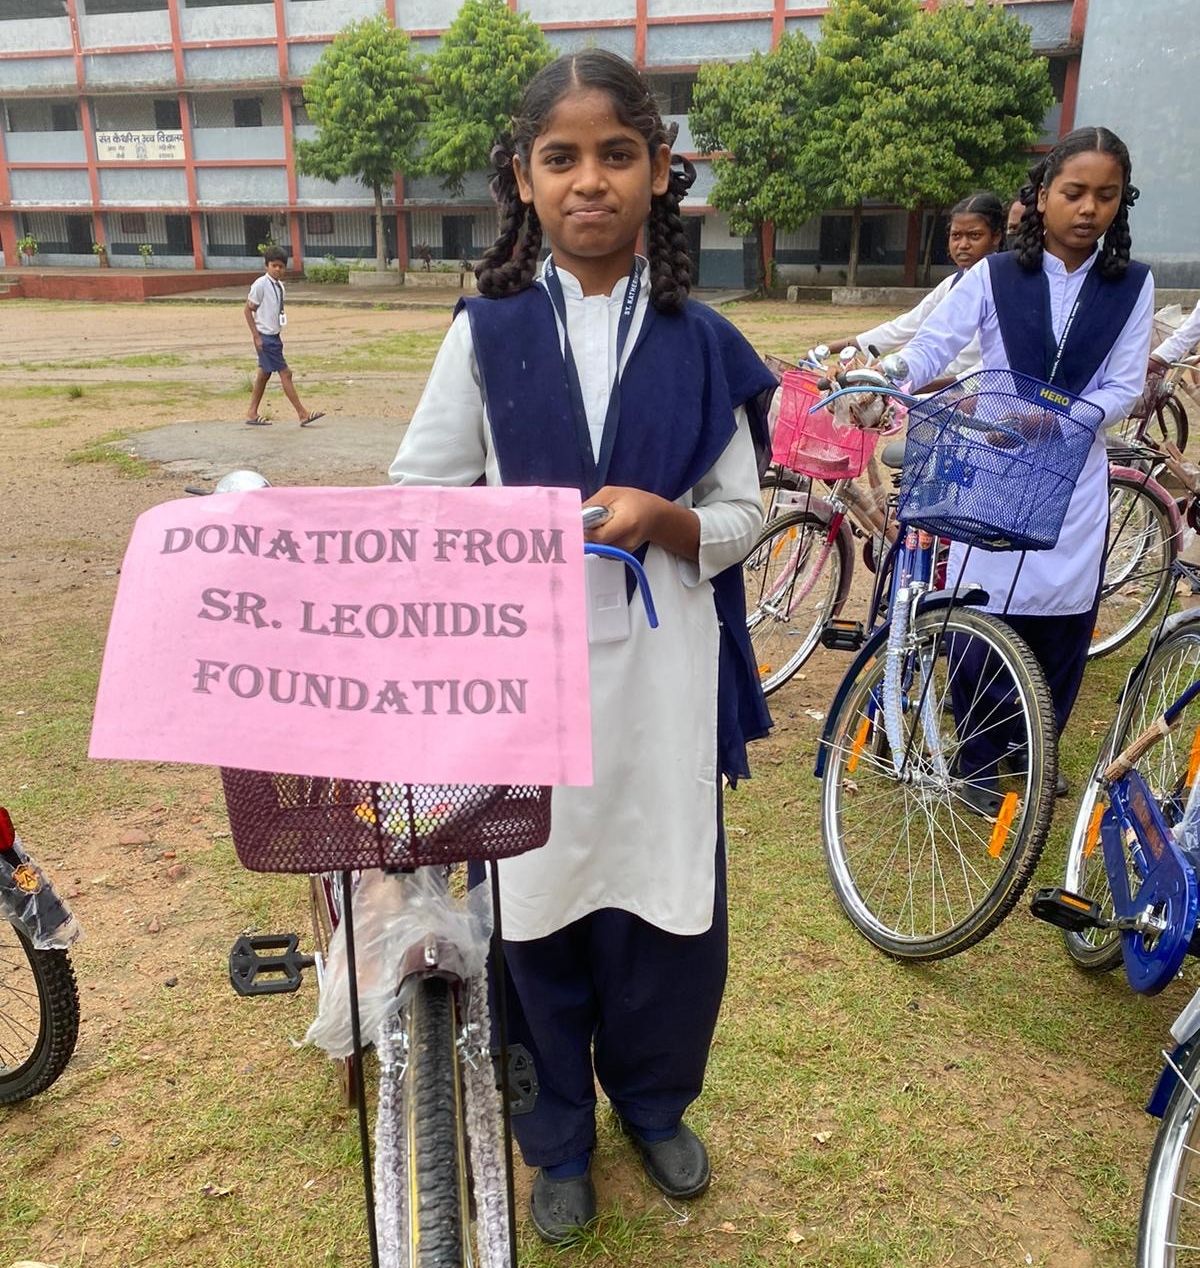 Weil Busfahren unerschwinglich teuer ist: Die Indien-Initiative Leonidis machte die Anschaffung von Fahrrädern möglich, so dass die Schülerinnen der St. Katherine High School in Ranchi (Nordindien) wieder am Unterricht teilnehmen konnten. von privat